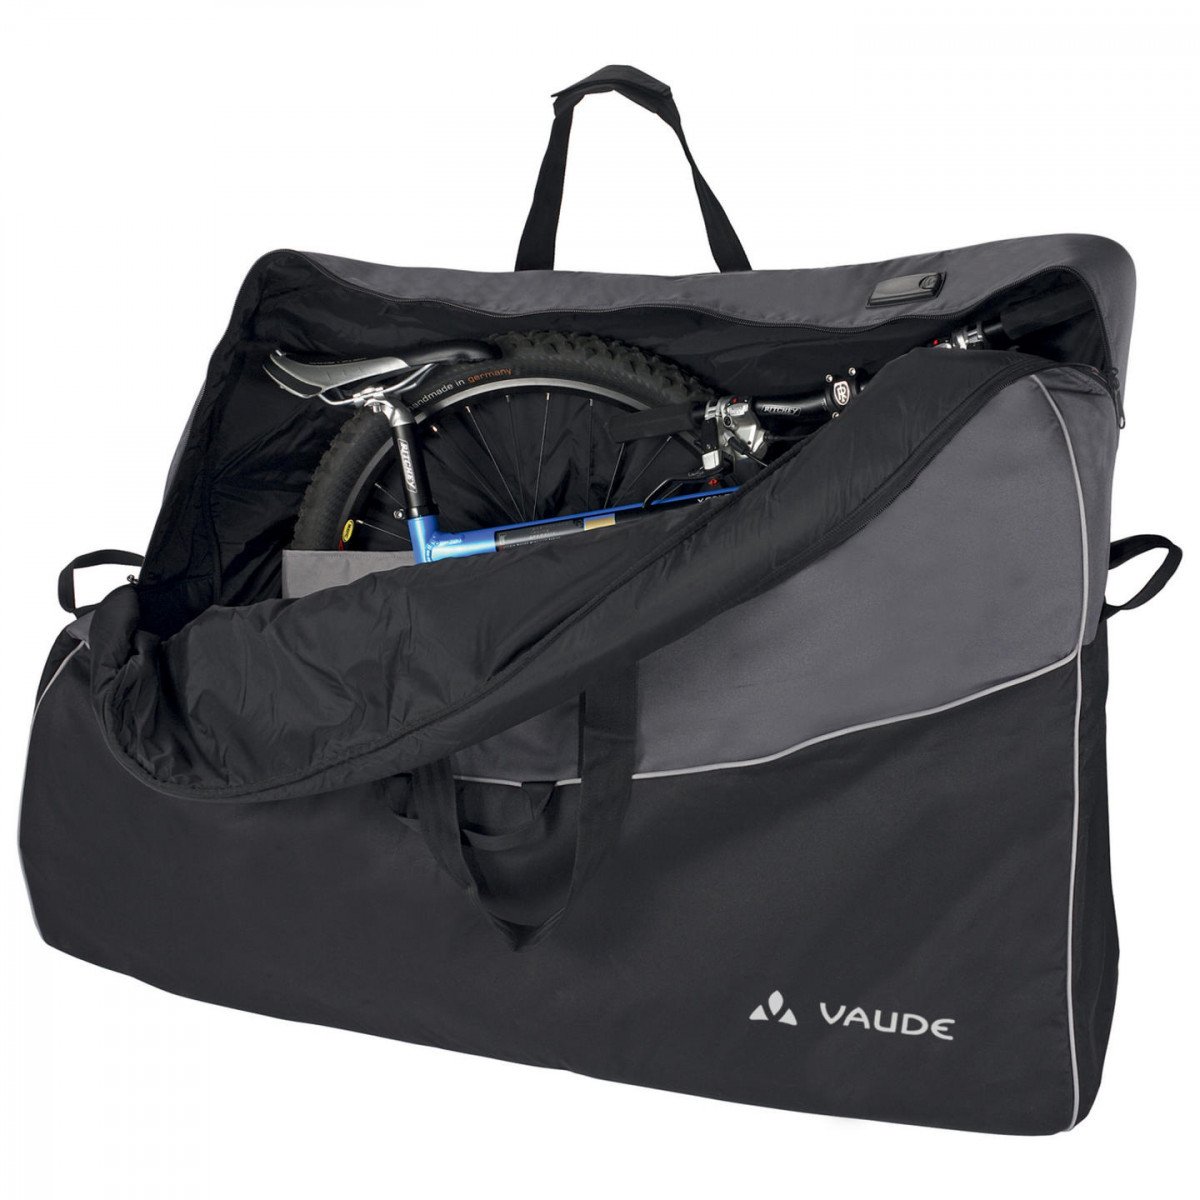 Велосипедная сумка VAUDE Big Bike Bag Pro сумка транспортировочная, размеры: 85x130x28см, 15257 набор сменных сеточек для ниблера силикон набор 3 шт размеры s m l